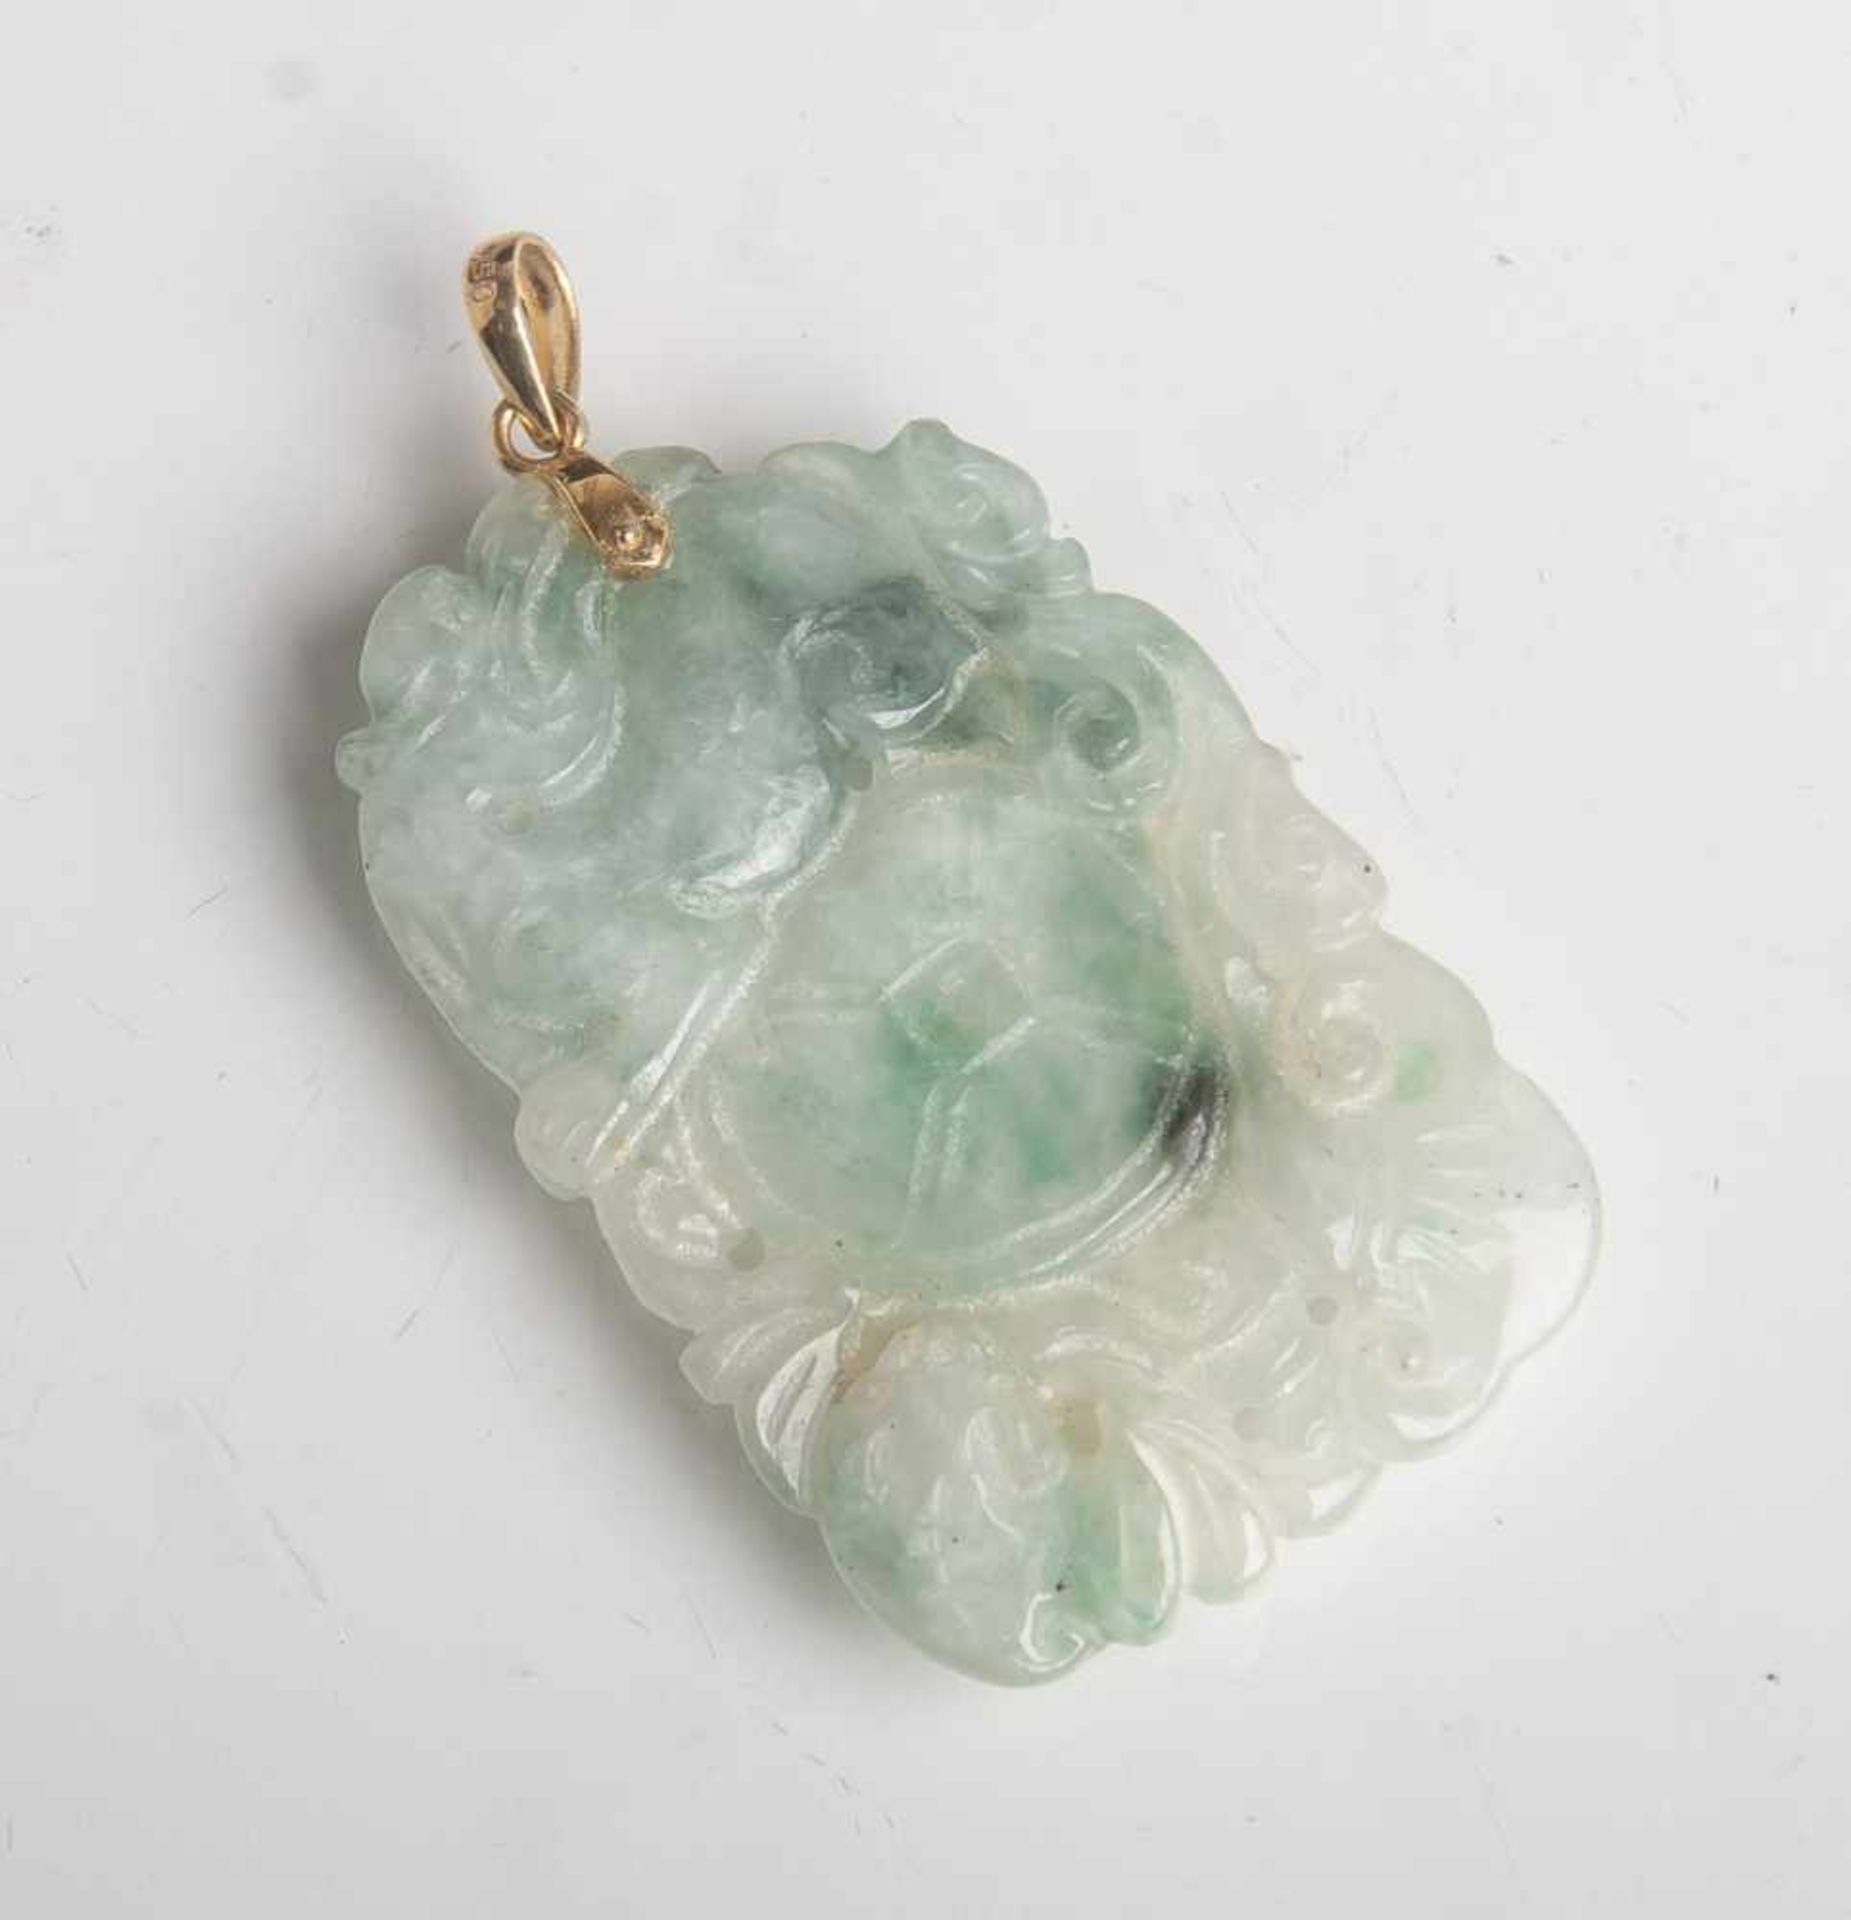 Anhänger (China, 20. Jahrhundert), Jade geschnitzt, mit Öse aus 750 GG, L. ca. 5 cm.